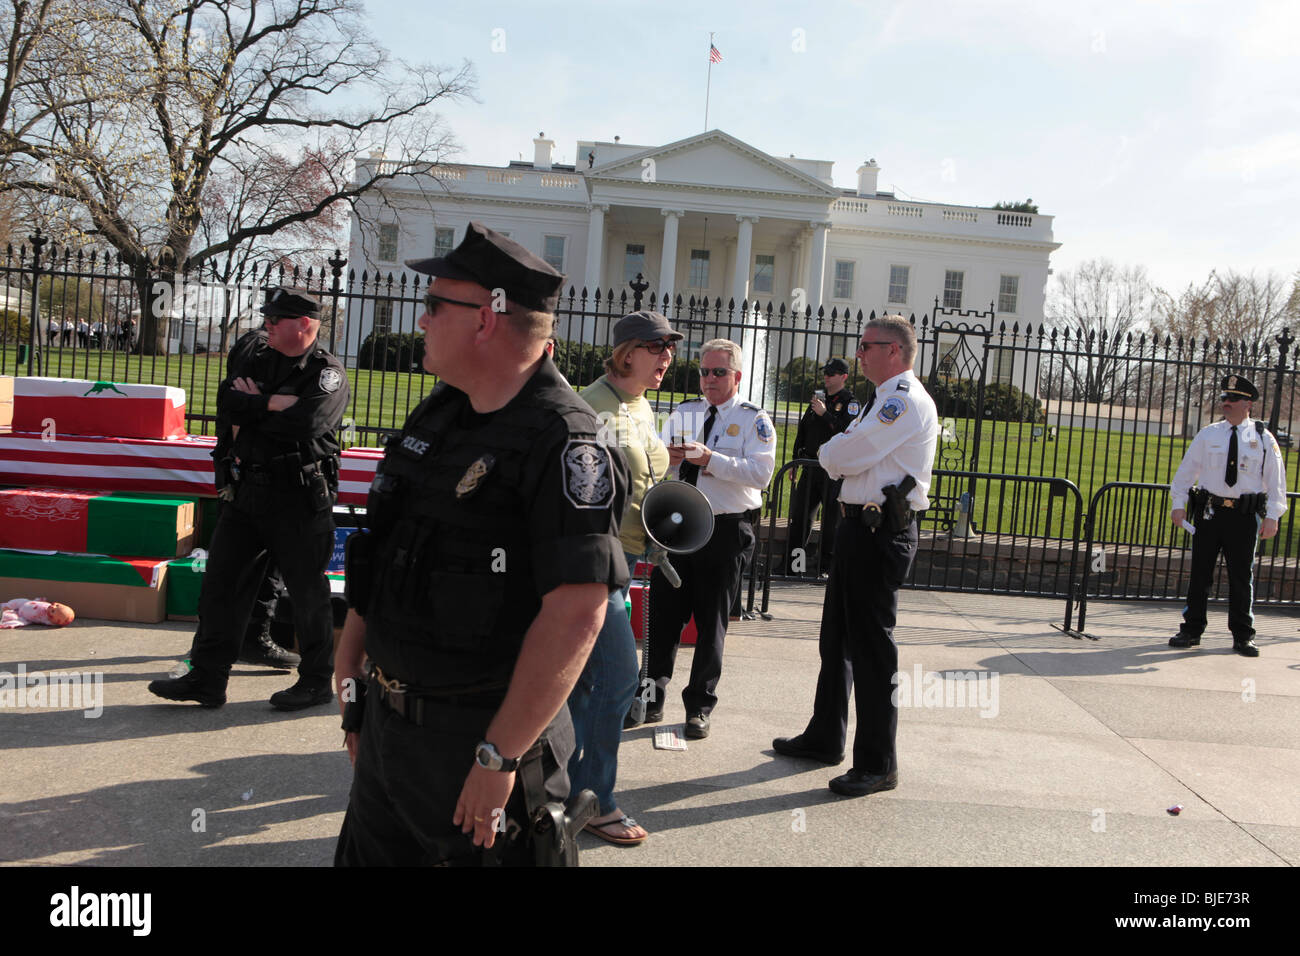 La guerre anti Cindy Sheehan manifestant arrêté par la police près de Maison Blanche. Manifestation anti-guerre. Marche sur Washington. 20 mars, 2010 Banque D'Images